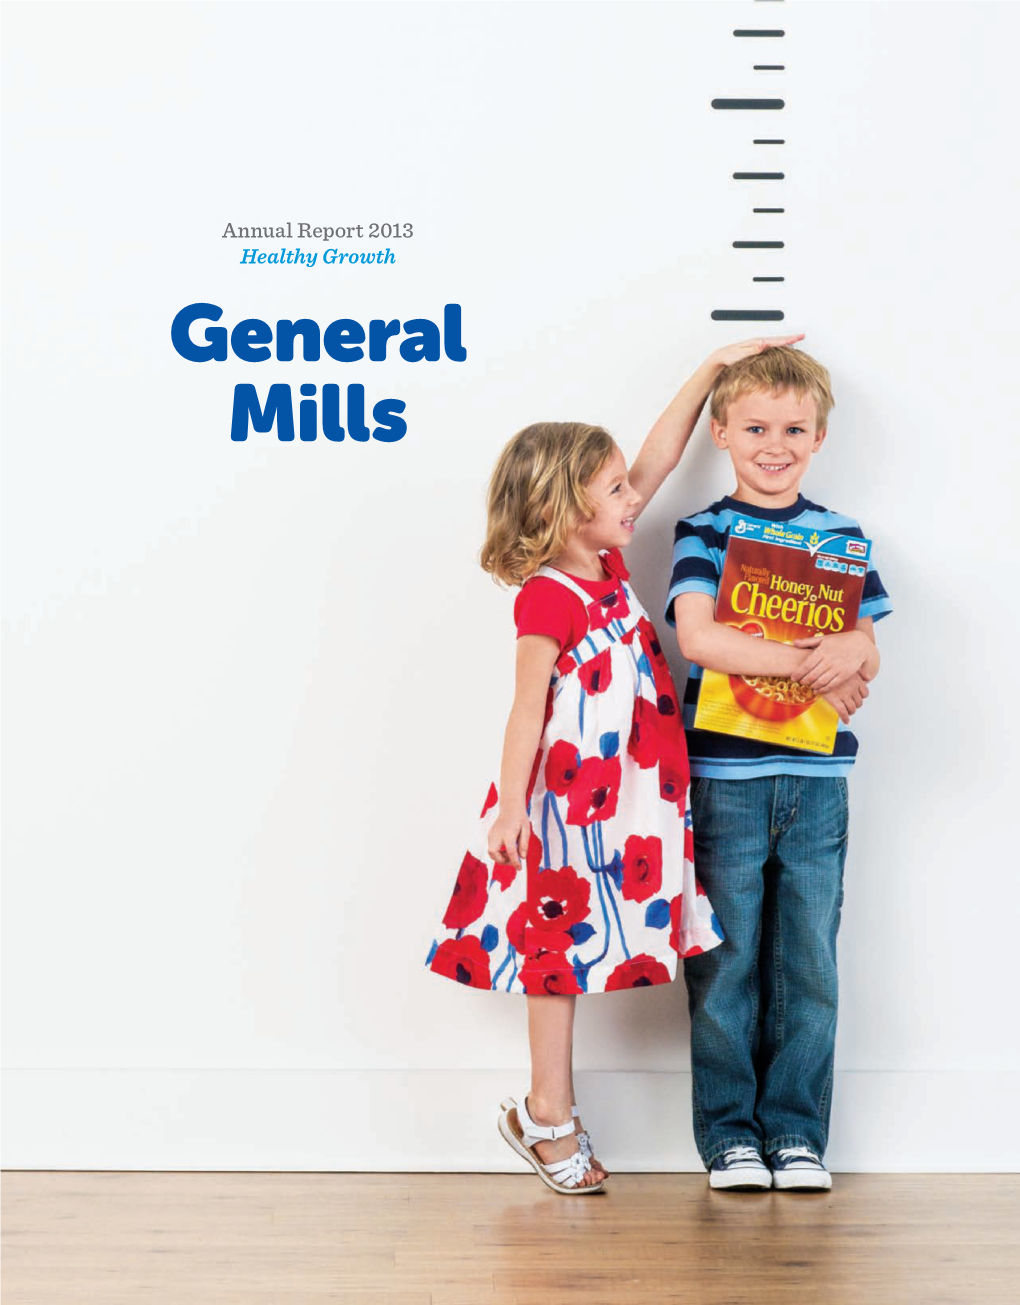 General Mills Annual Report 2013